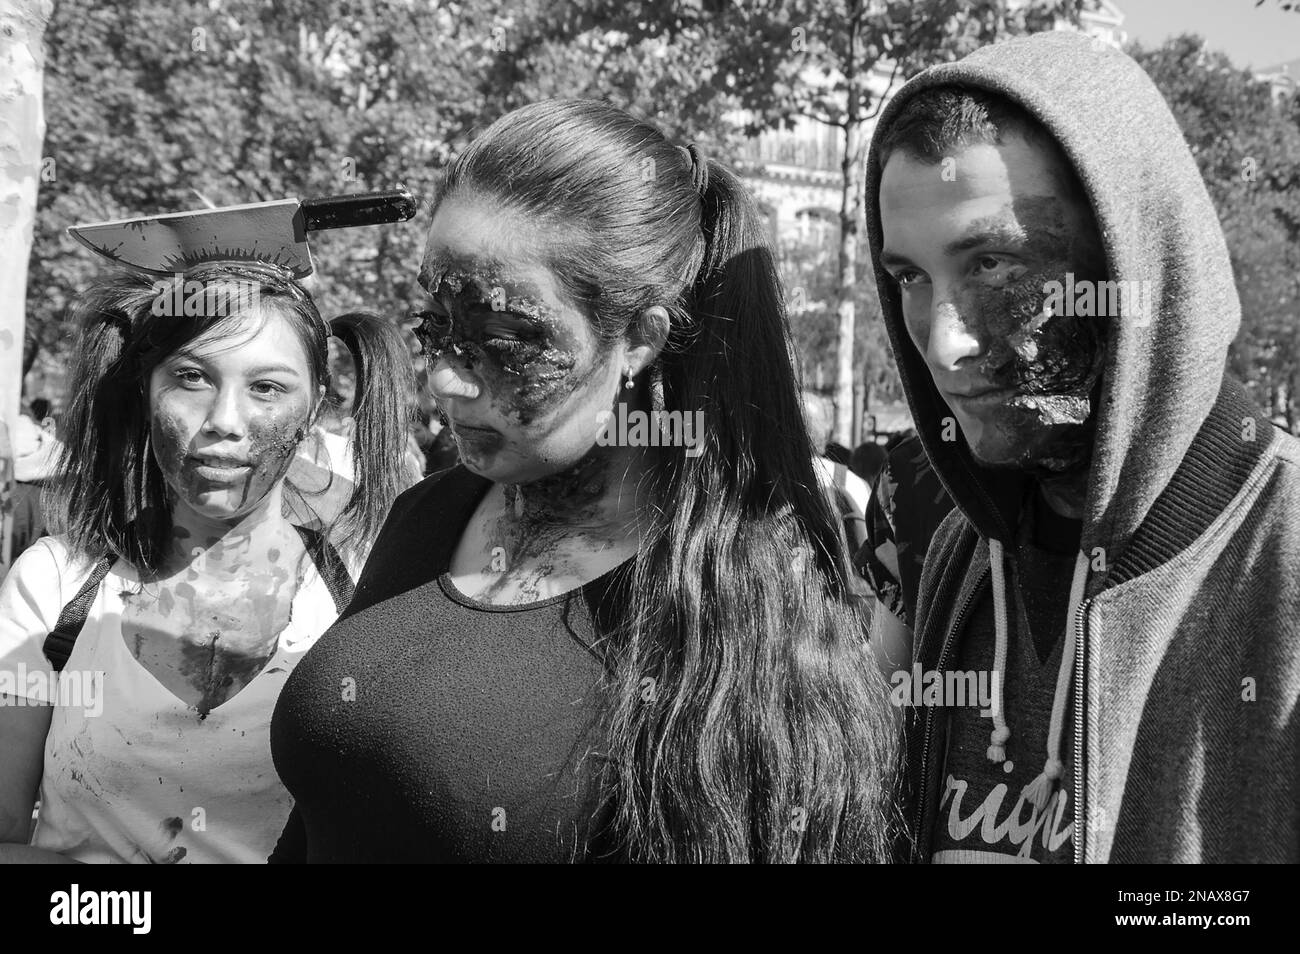 PARIS, FRANKREICH - 3. OKTOBER 2015: Drei junge Menschen nehmen an der Zombie-Parade am Place de la Republique Teil (einer davon mit Messer im Kopf). Zombie Stockfoto